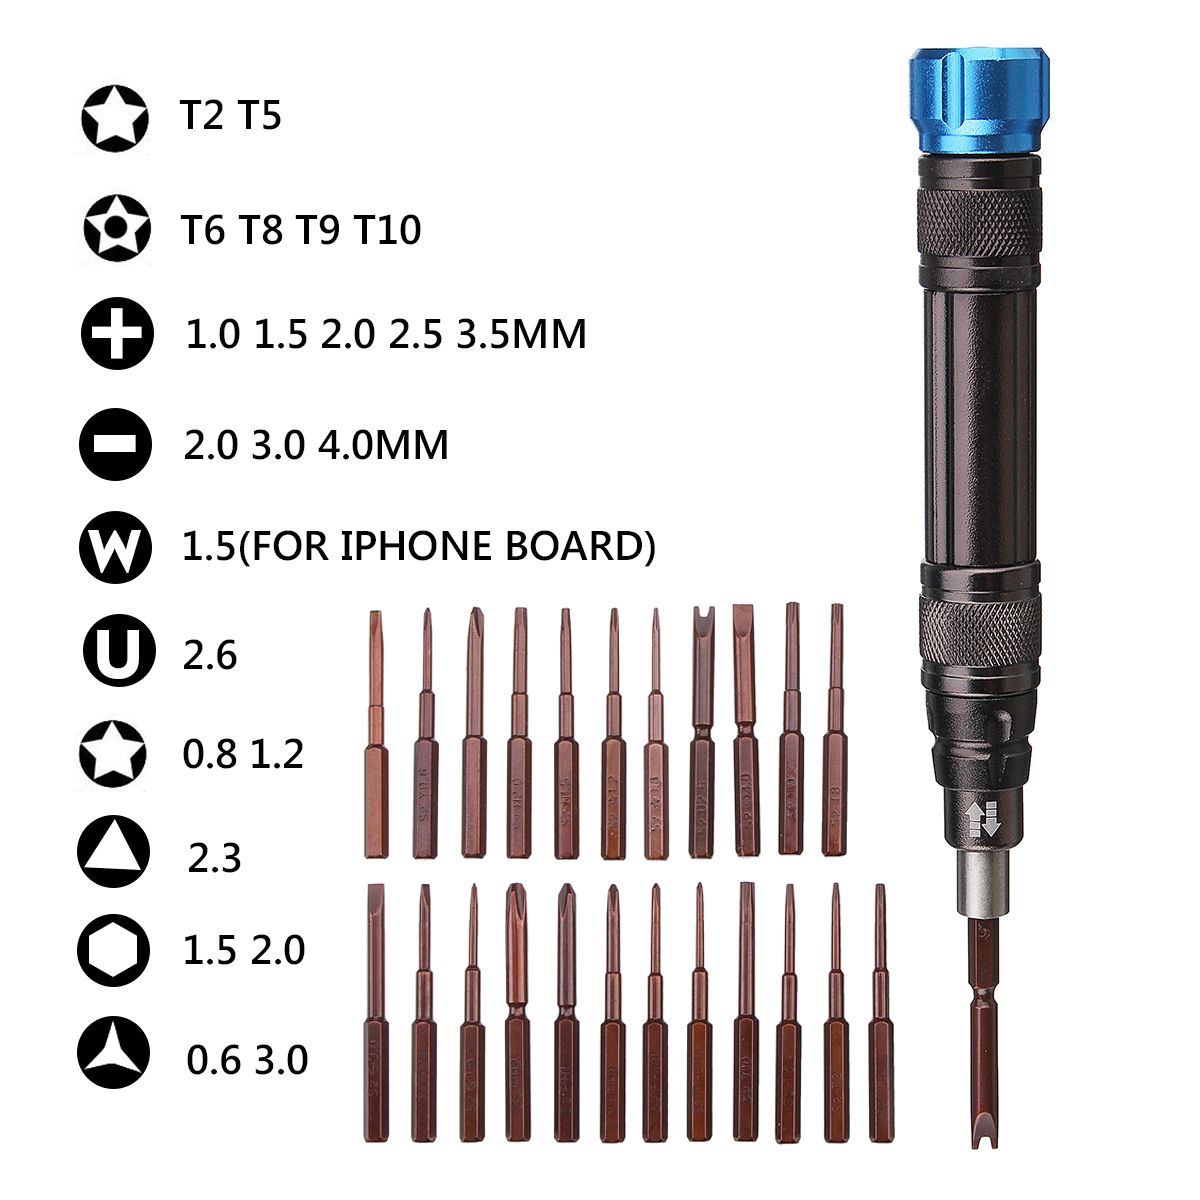 25-IN-1-Mini-Repair-Precision-Screwdriver-Tools-Kit-For-Notebook-Phones-Repairing-Tools-1317885